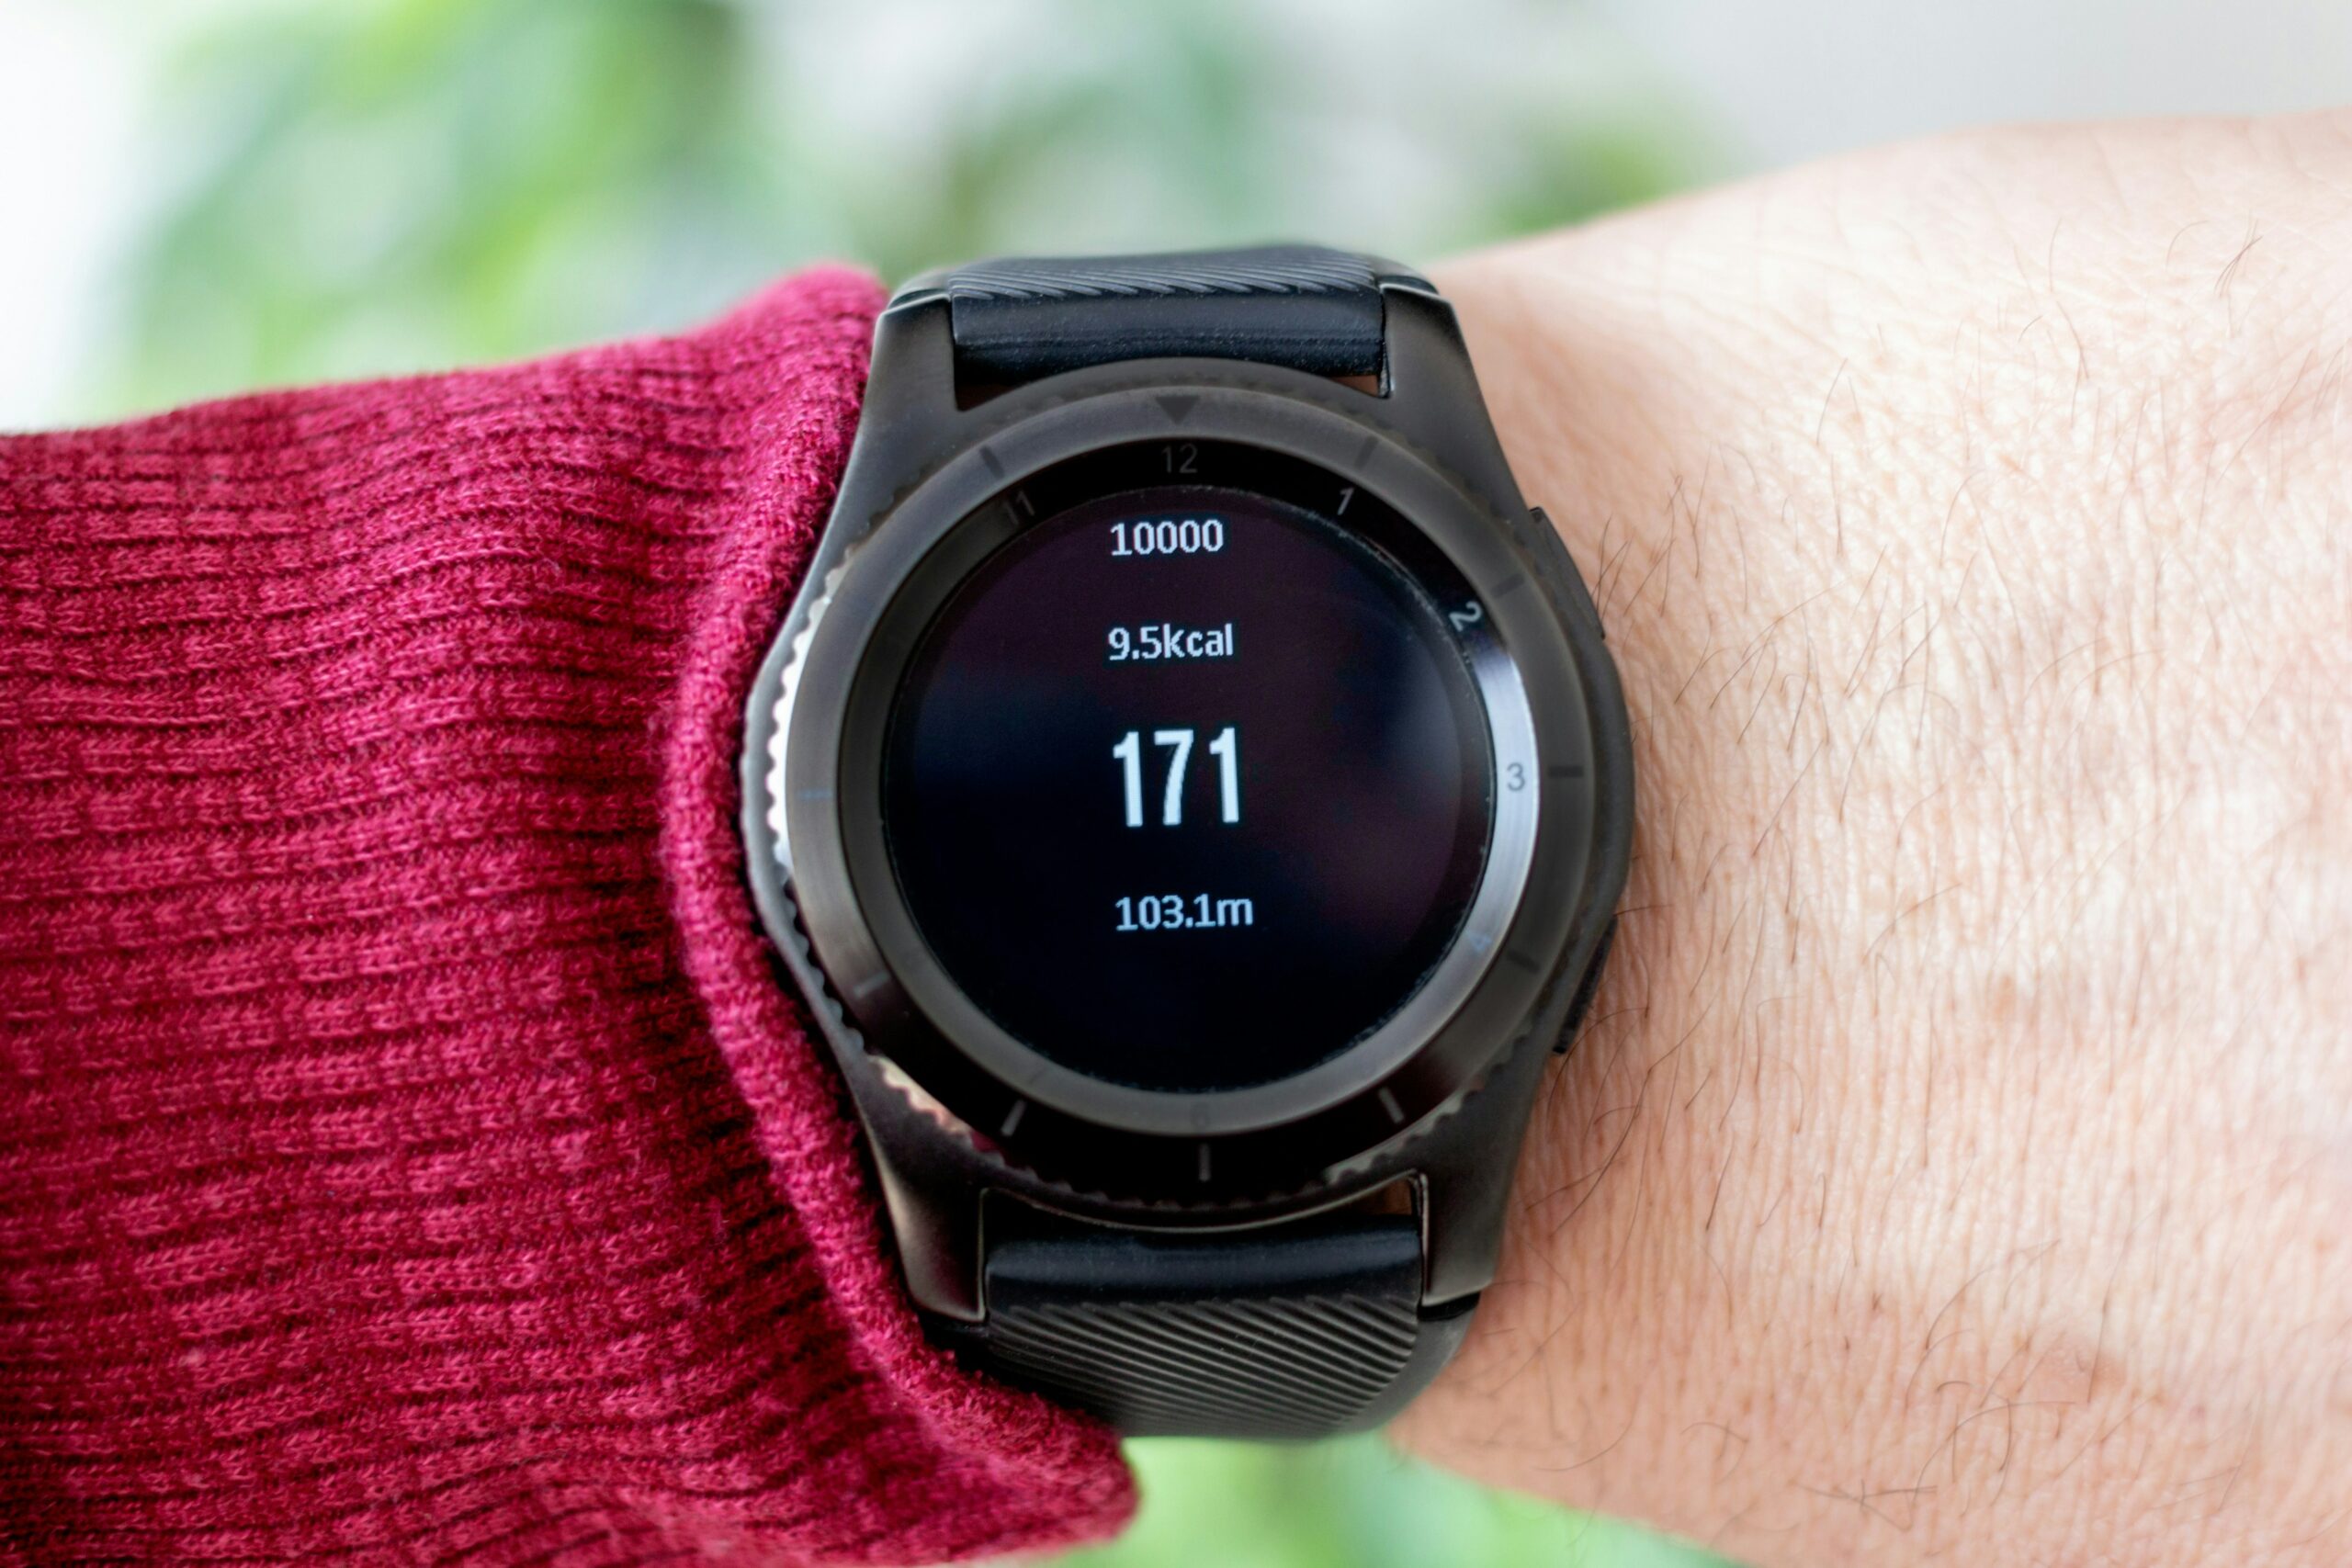 découvrez les avantages de la smartwatch health pour surveiller votre santé en temps réel et rester actif. trouvez la meilleure smartwatch pour vos besoins de santé et de bien-être.